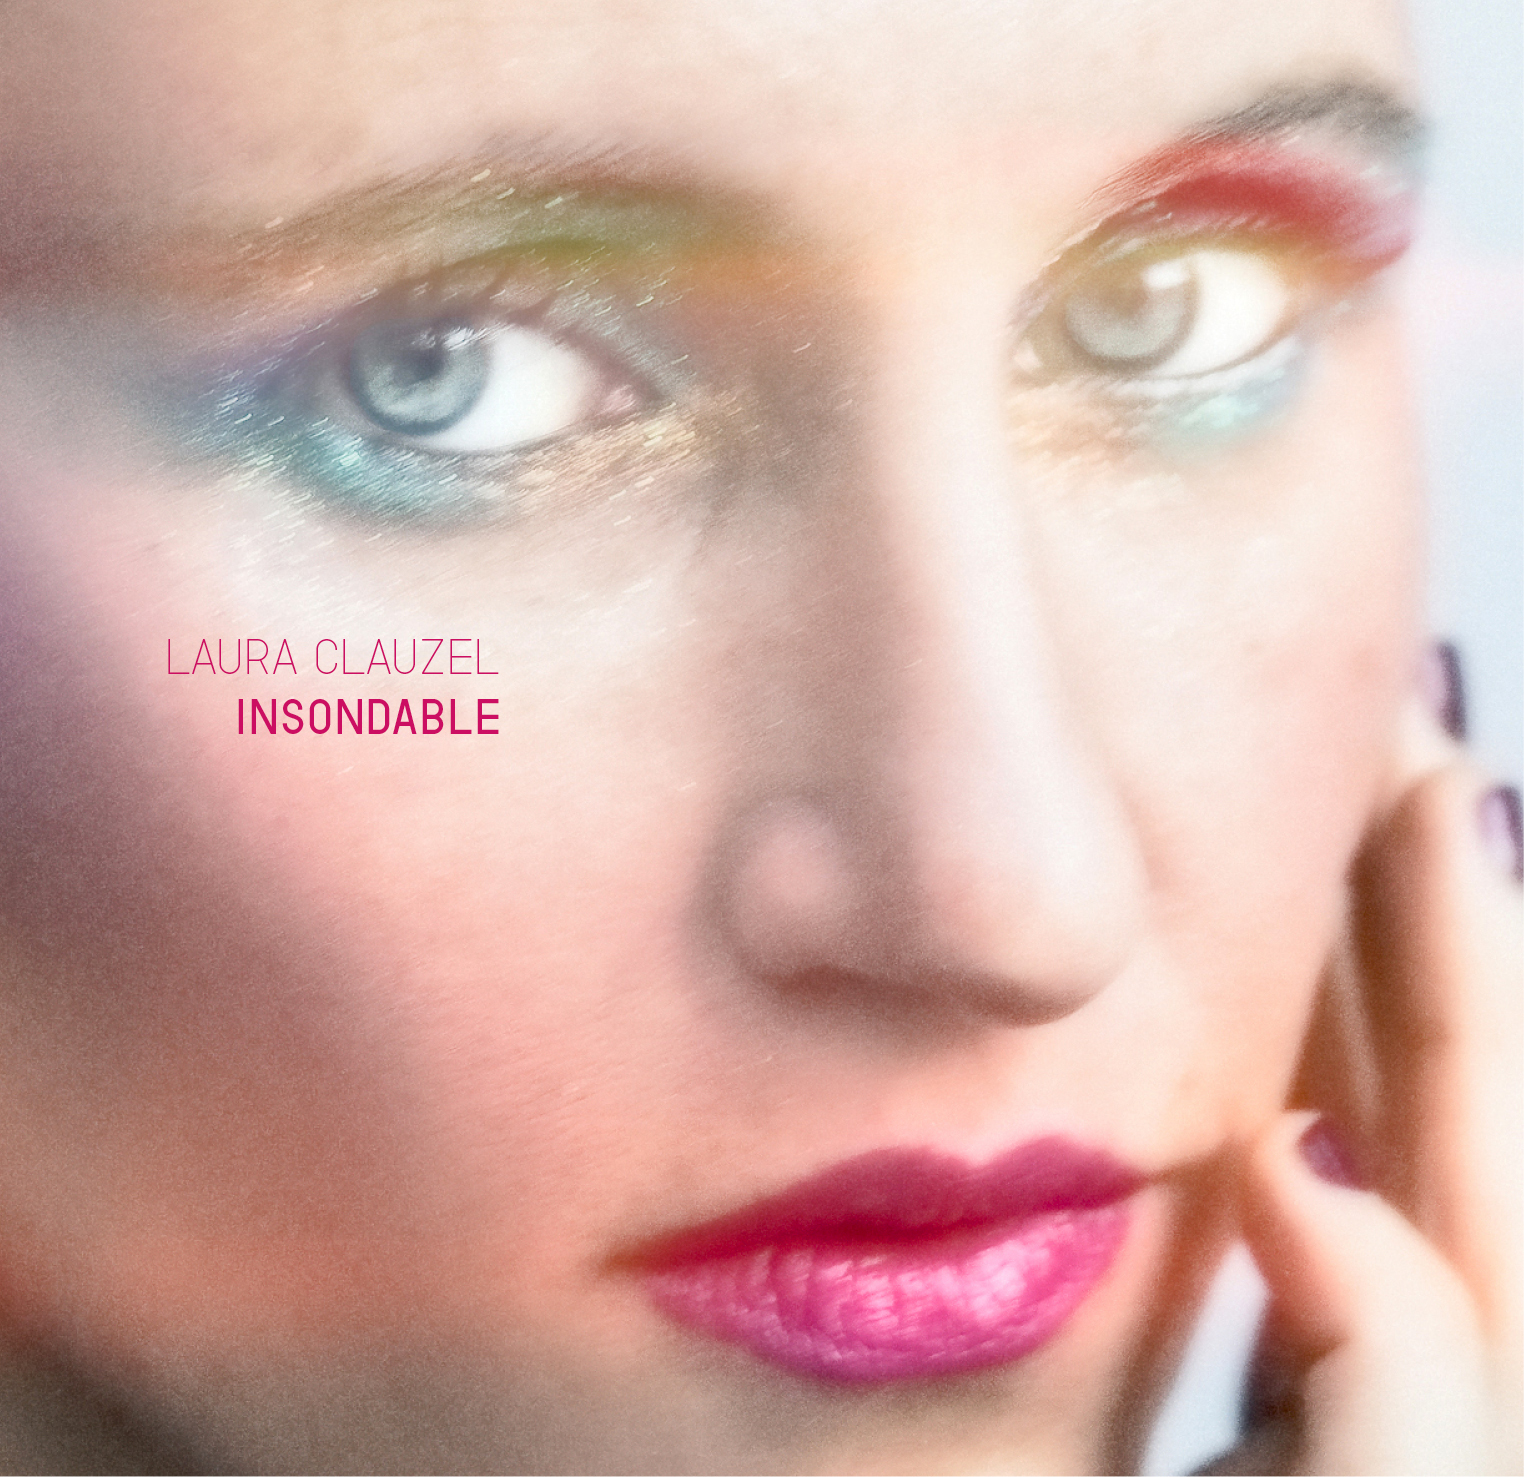 Laura Clauzel Album Cover Insondable